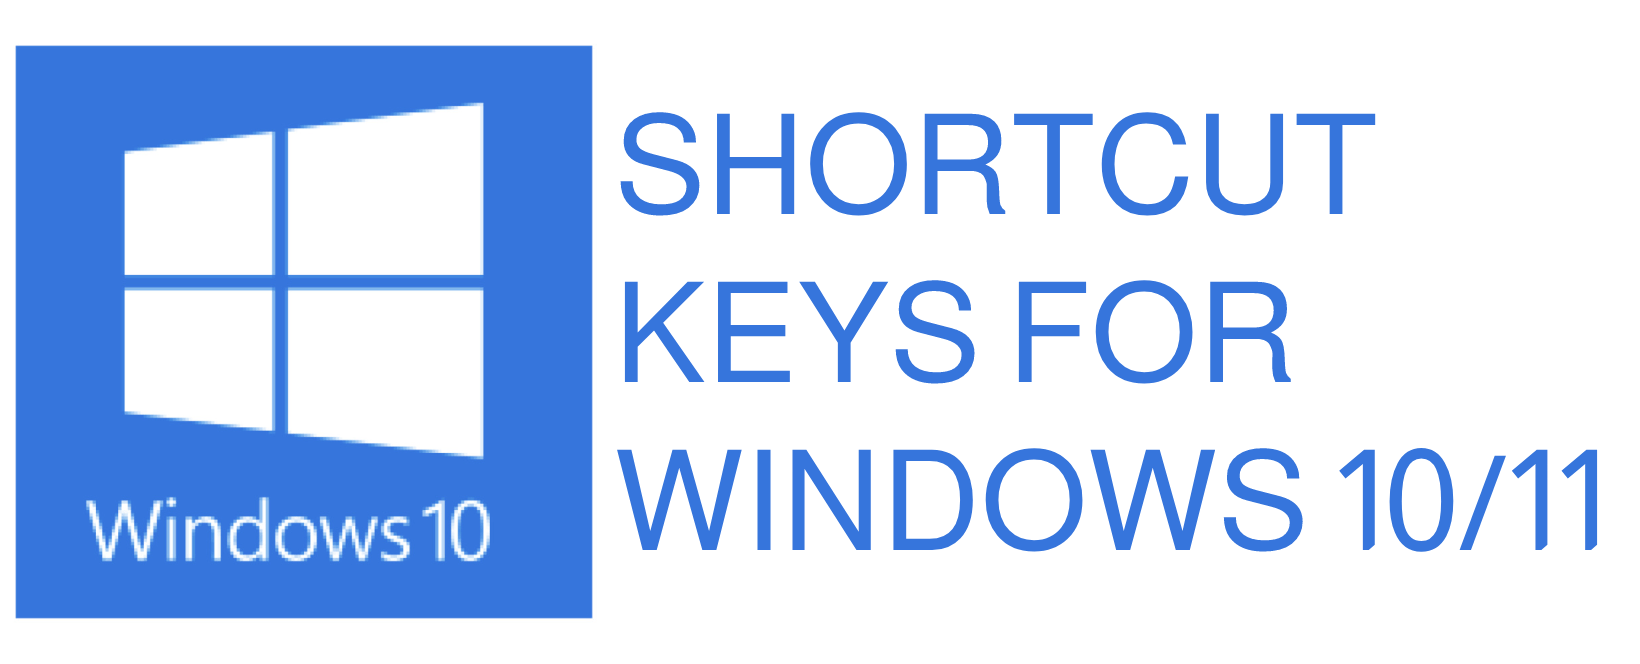 windows-keyboard-basic-shortcuts-for-Windows-10/11